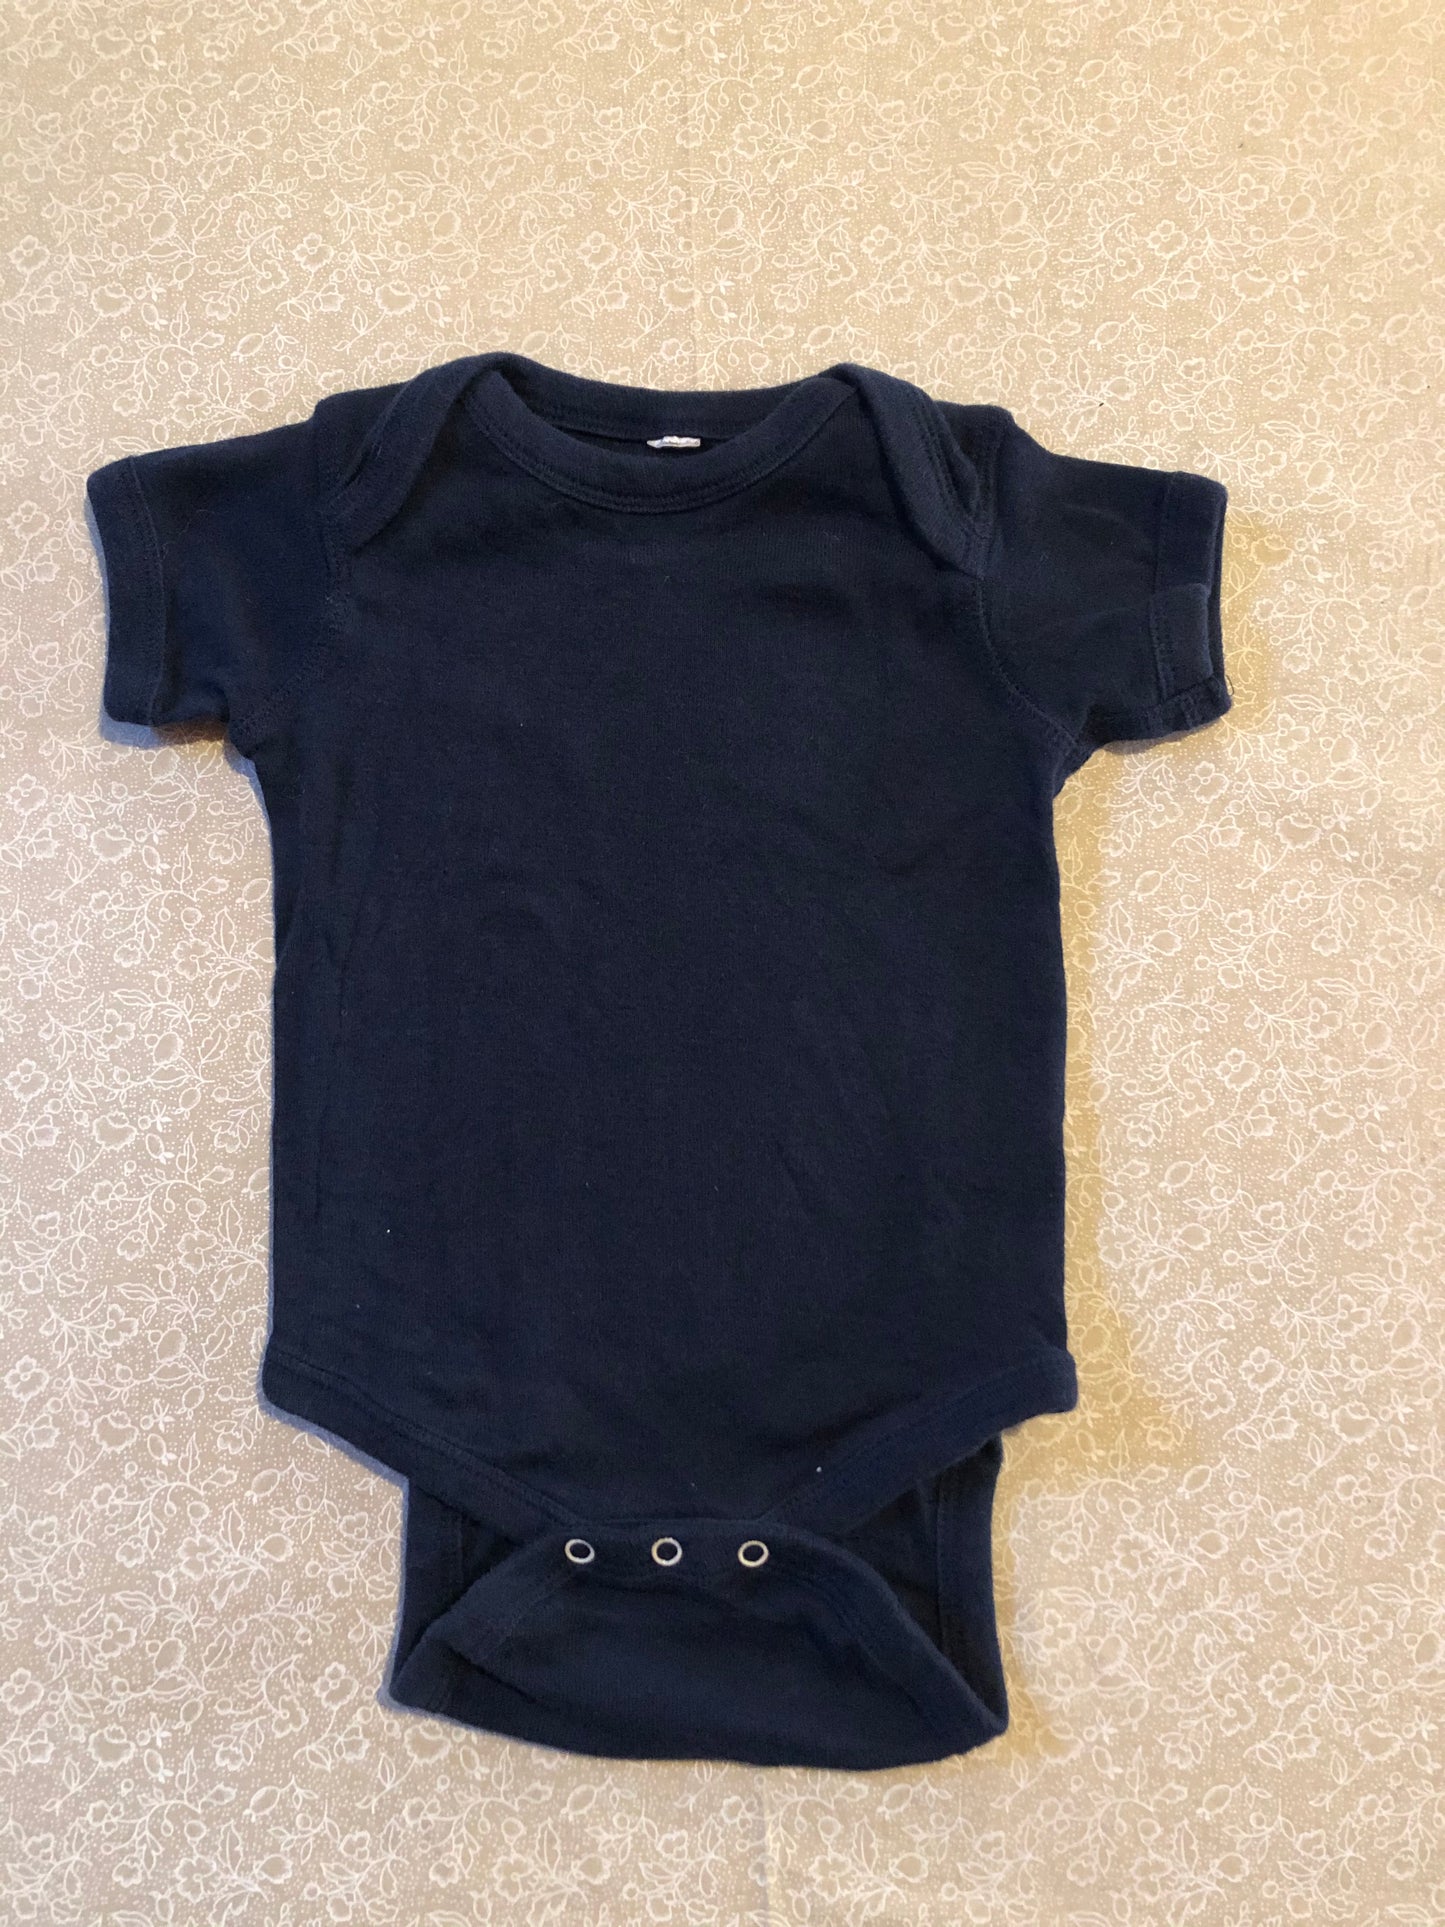 3-month-diaper-shirt-no-name-dark-blue